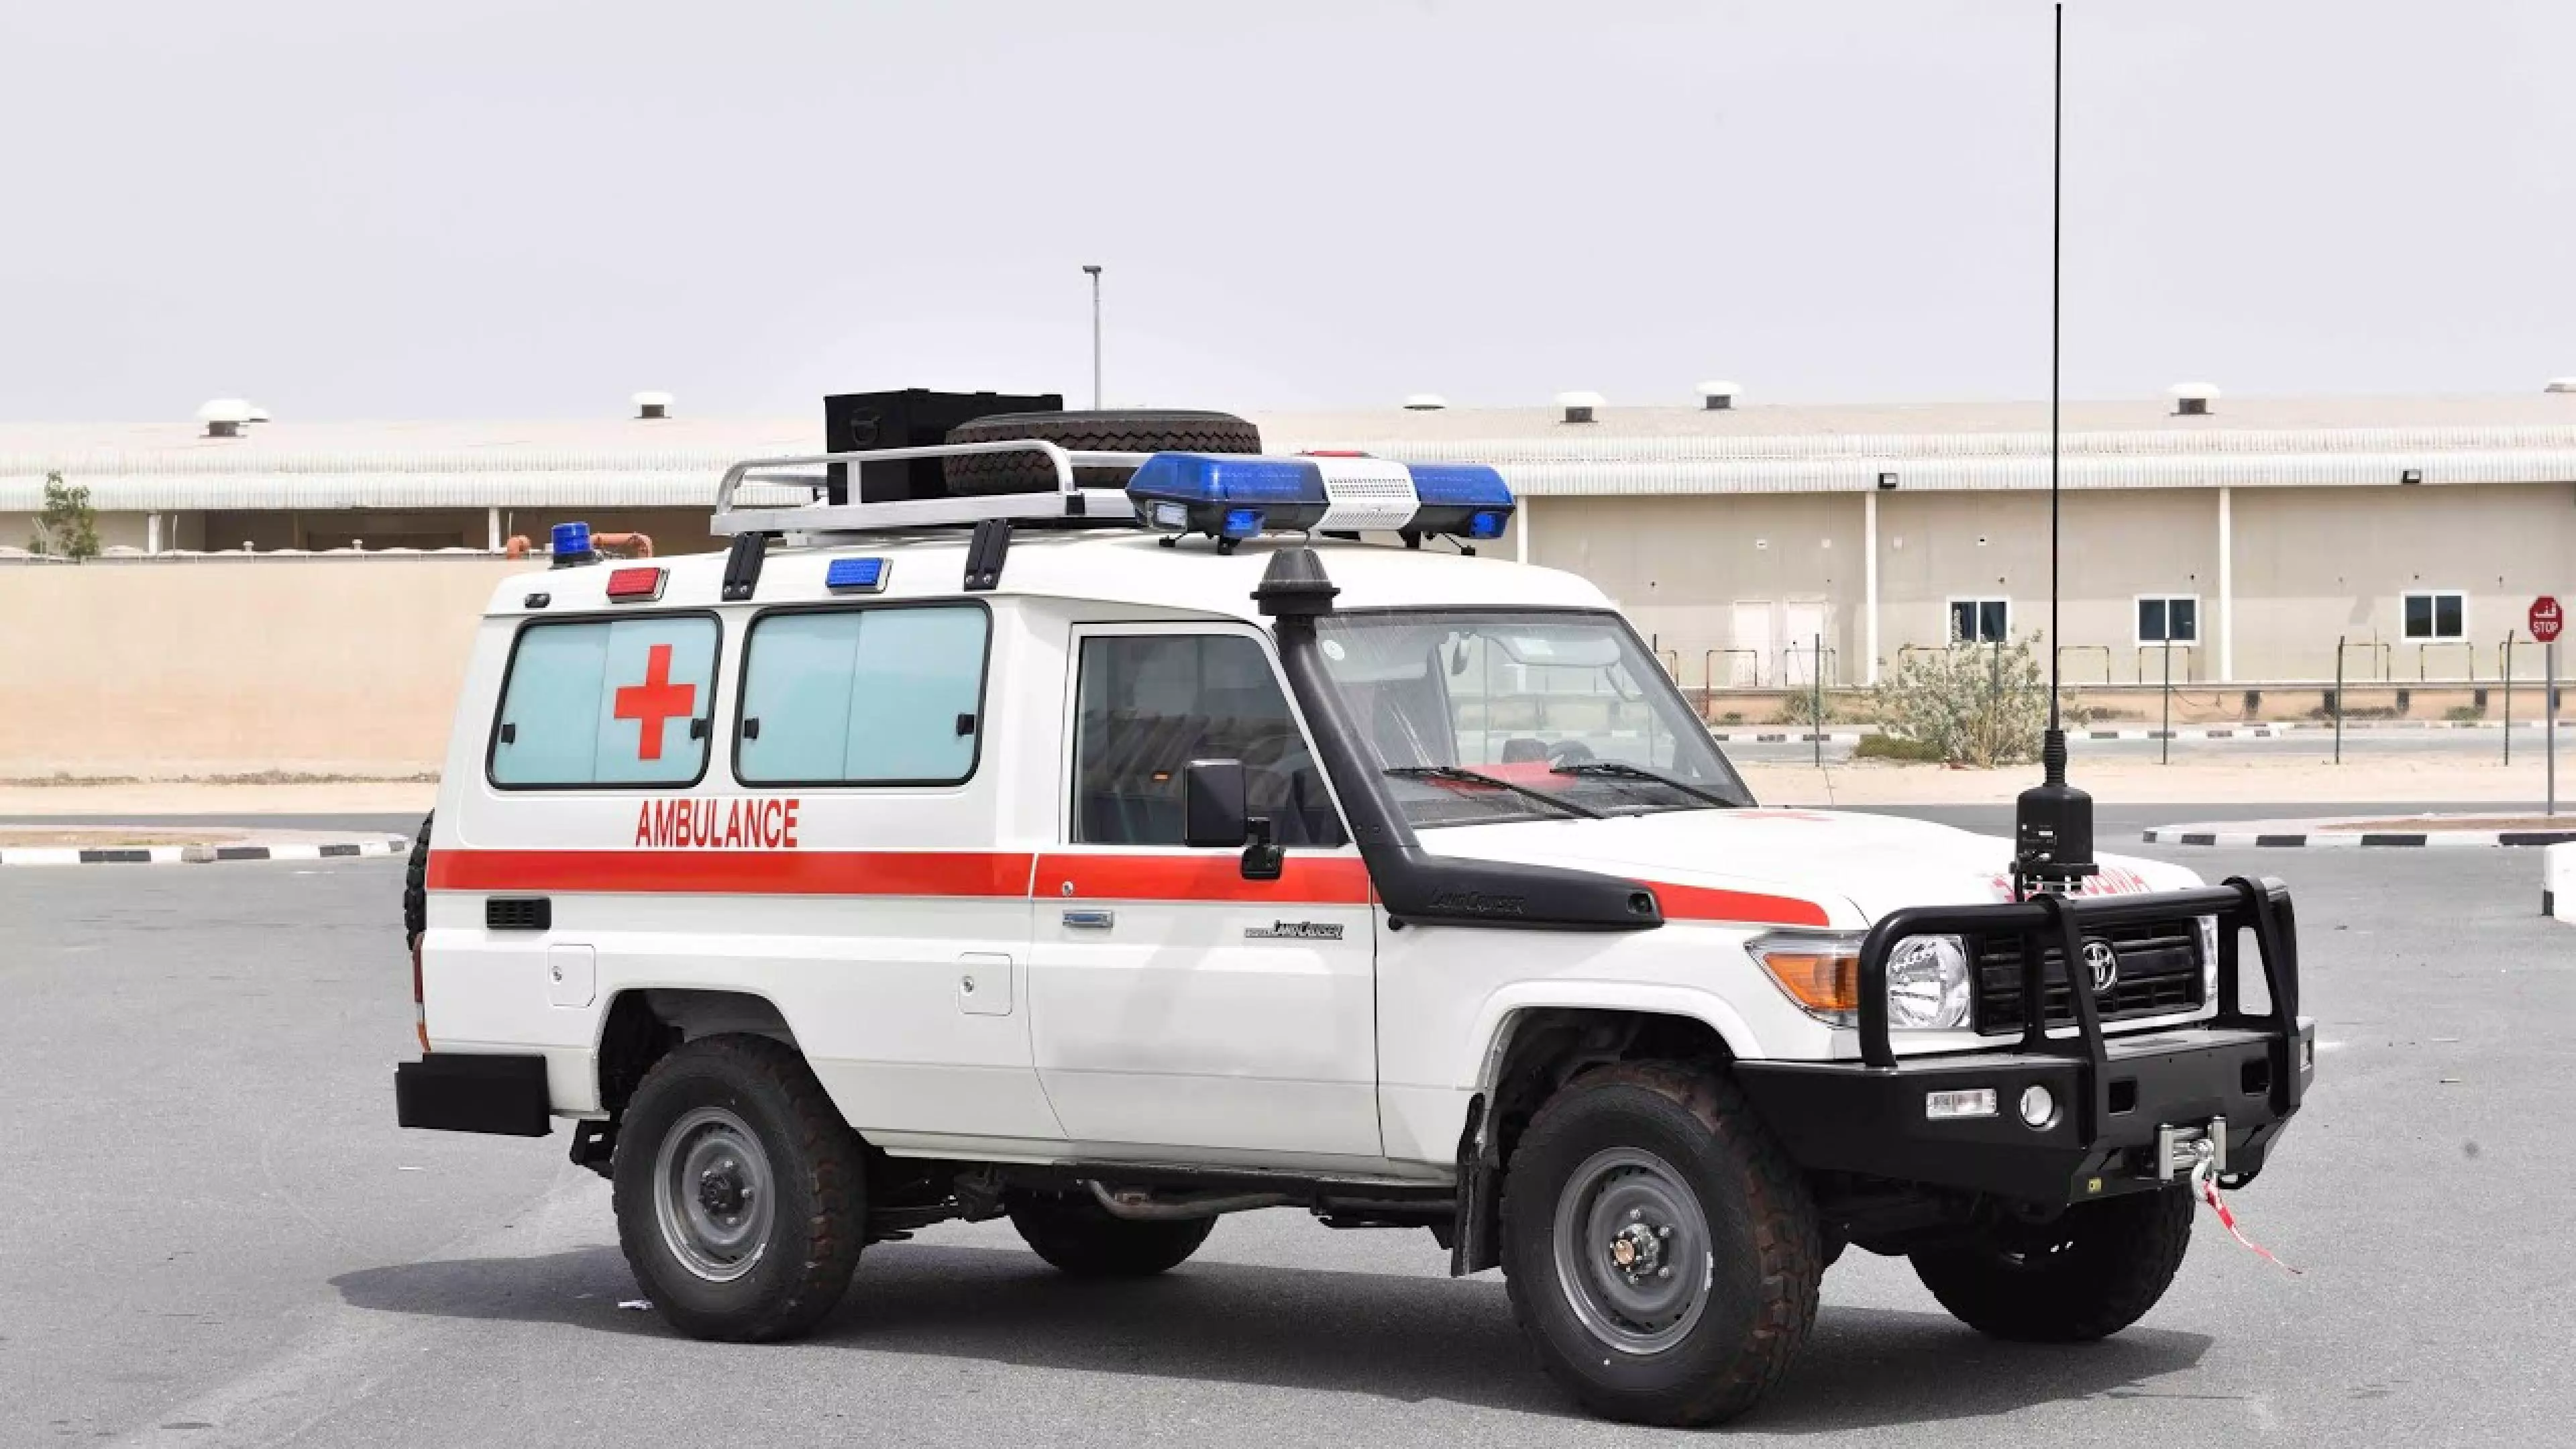 Toyota Land Cruiser 78 Hard Top (Ambulance)  - 2021